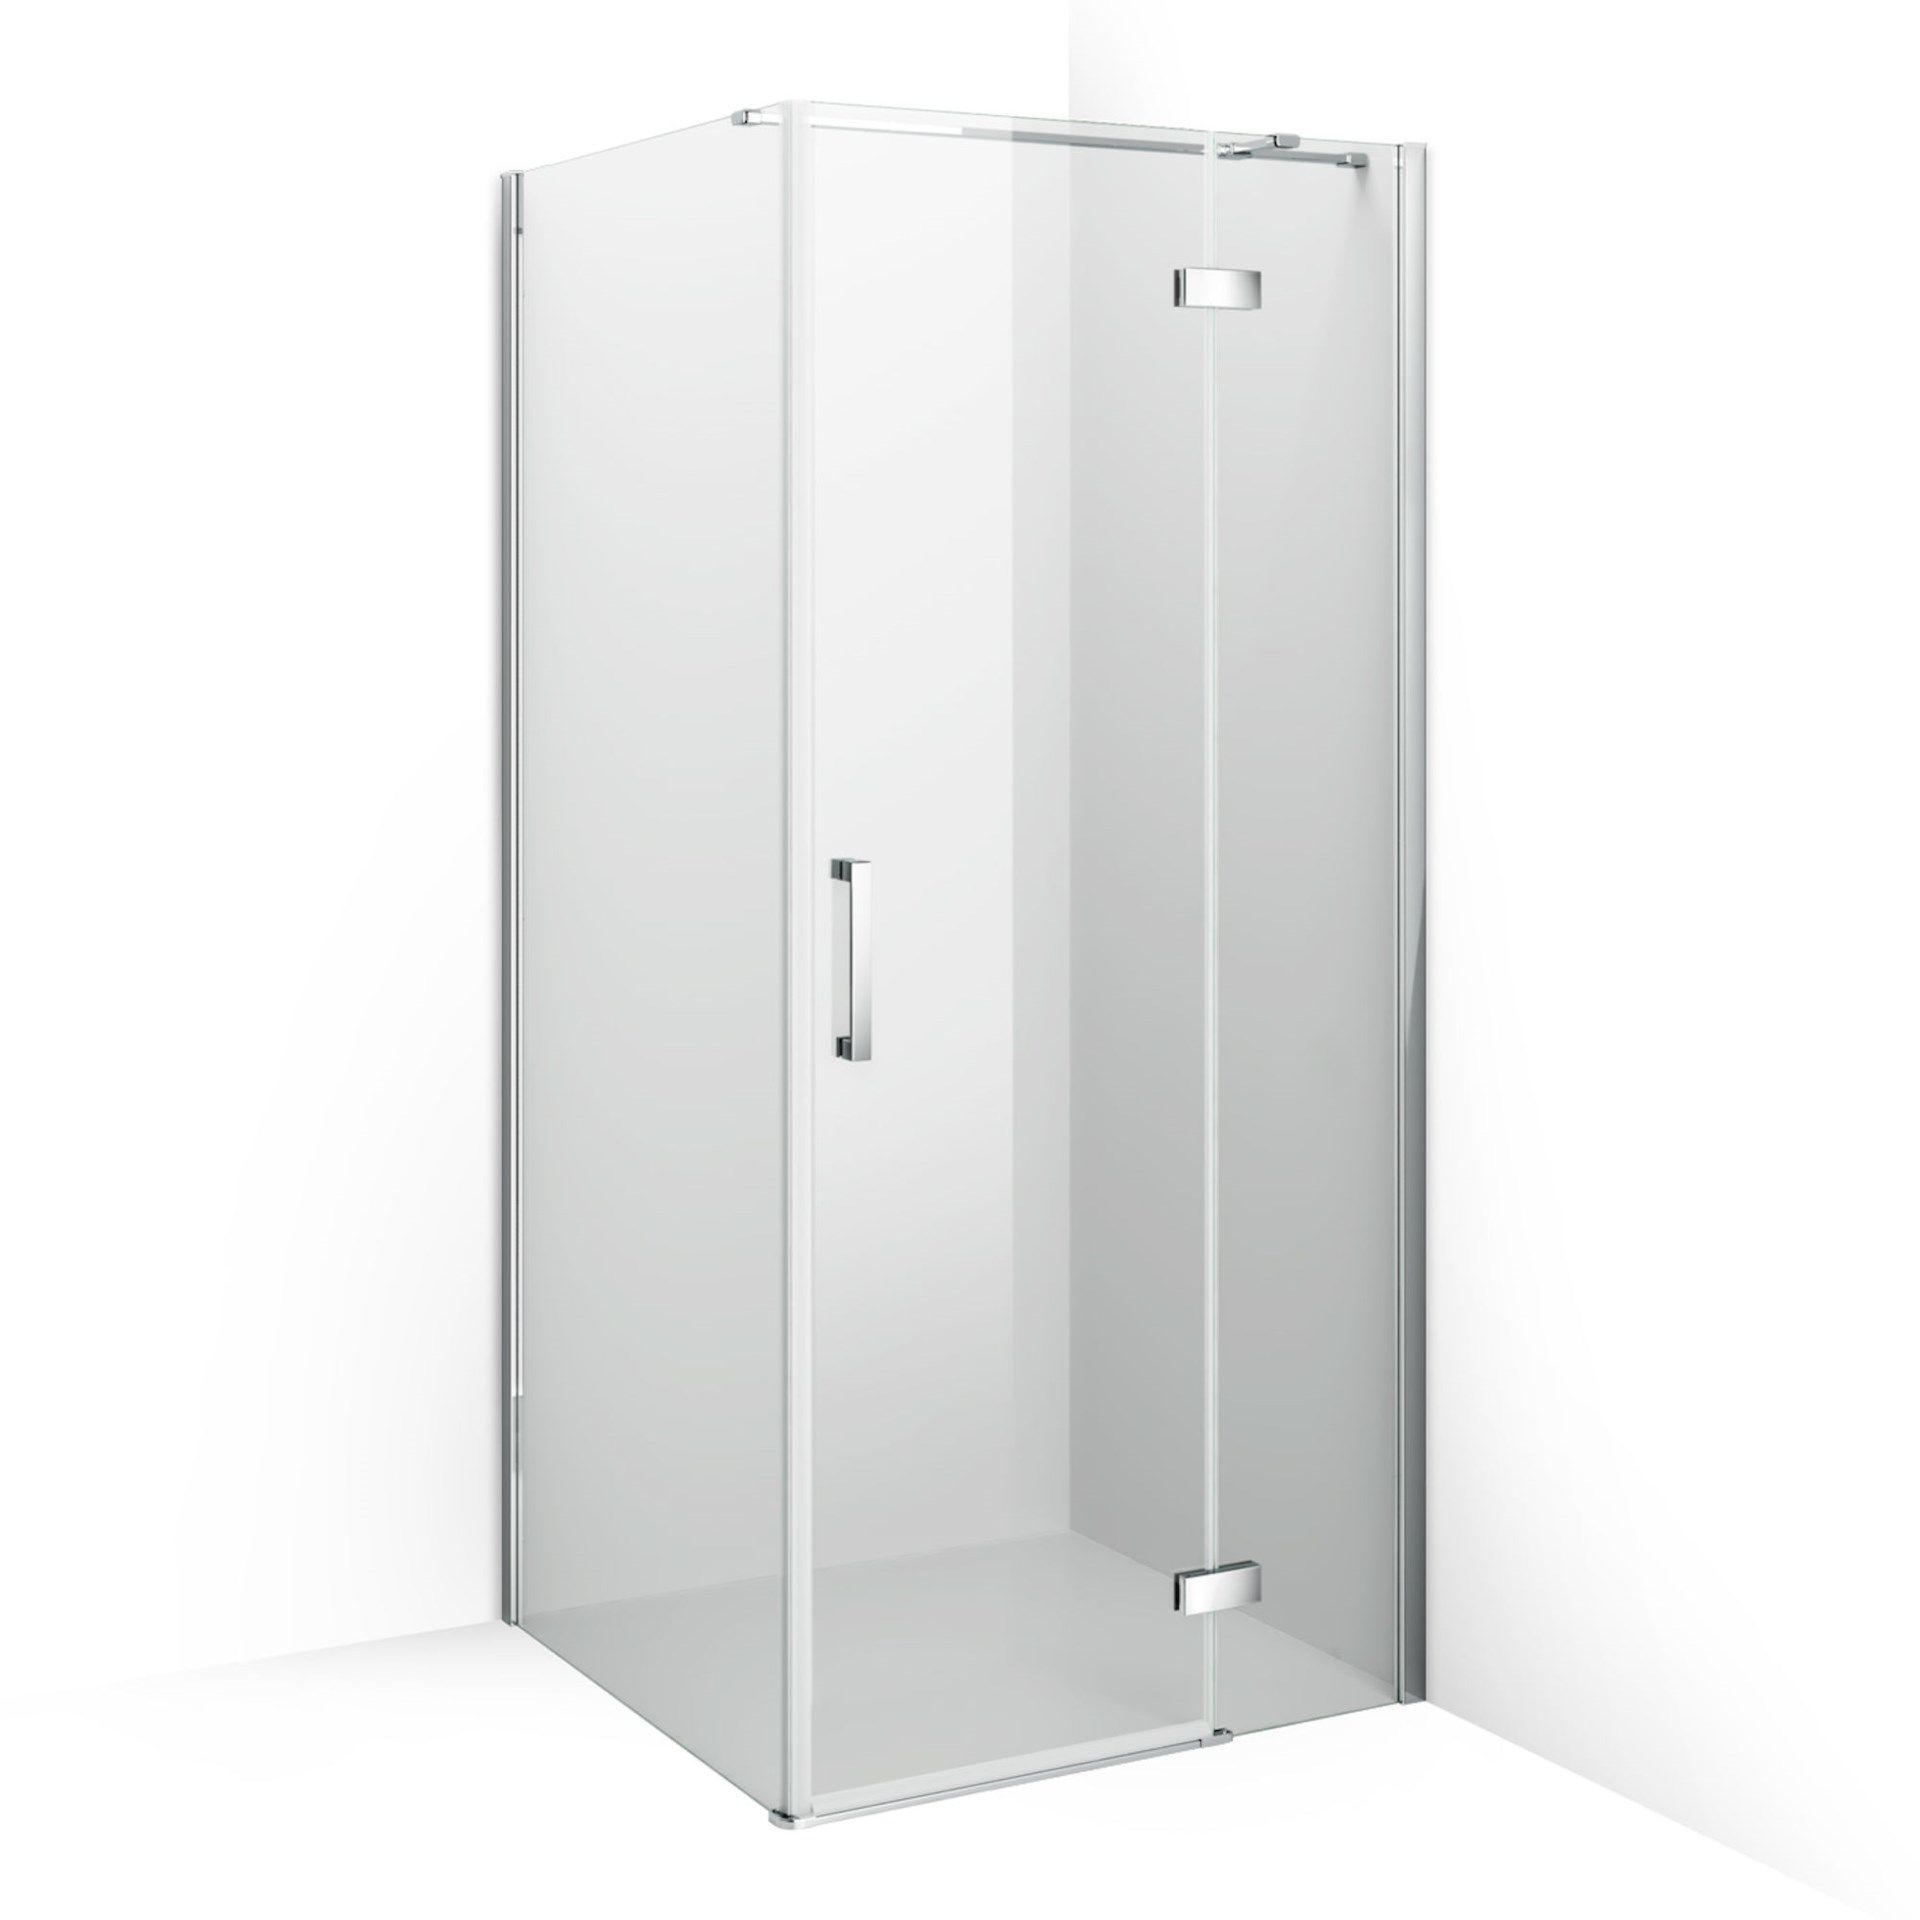 (WG41) 1100x760mm - 8mm - Premium EasyClean Hinged Door Shower Enclosure. RRP £724.99. 8mm Eas... - Image 4 of 4